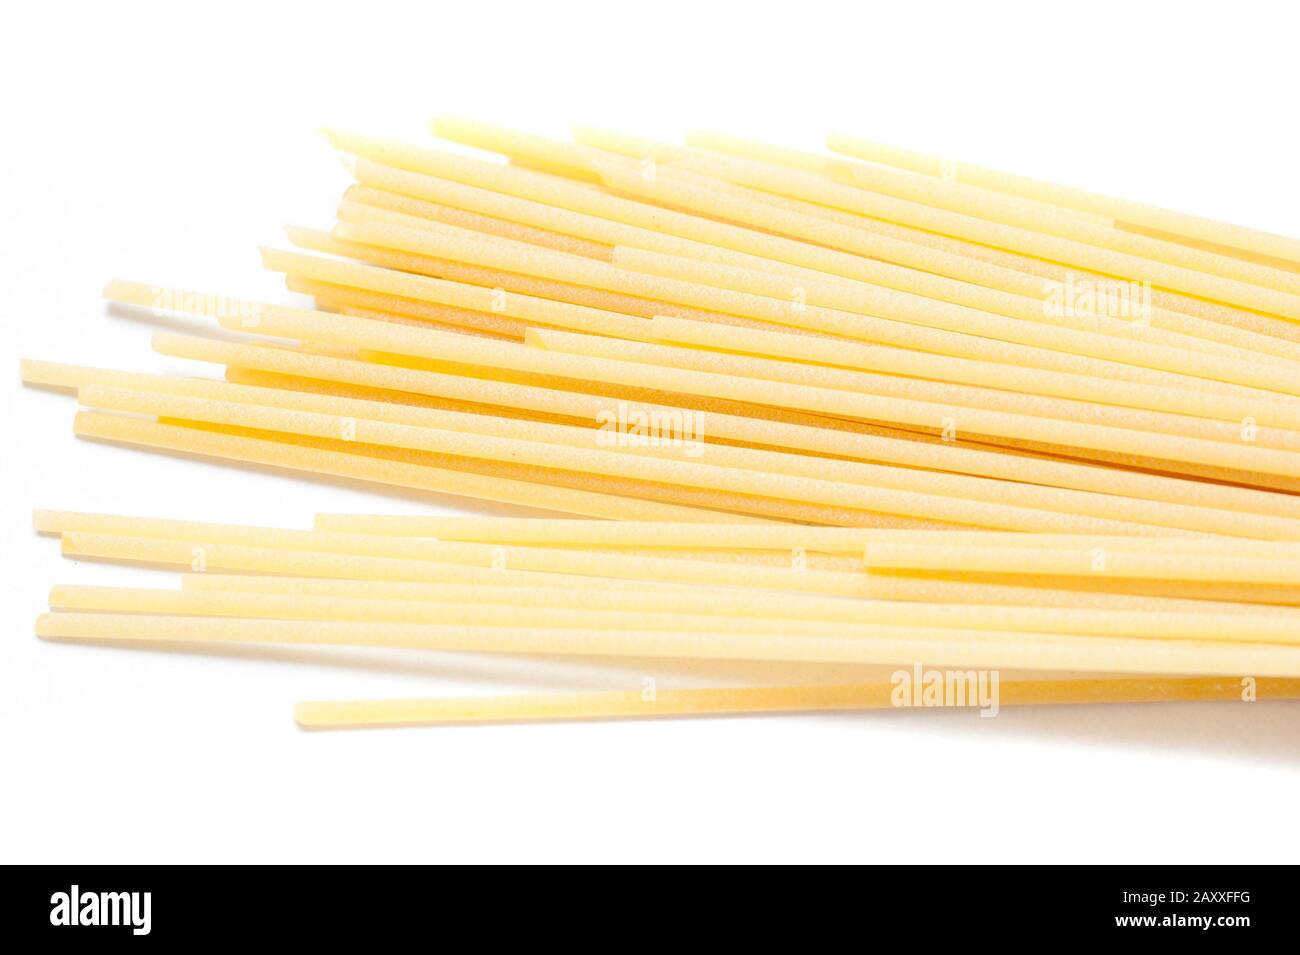 Spaghetti italiani crudi a base di grano duro sano e utilizzati come ingredienti della cucina mediterranea Foto Stock